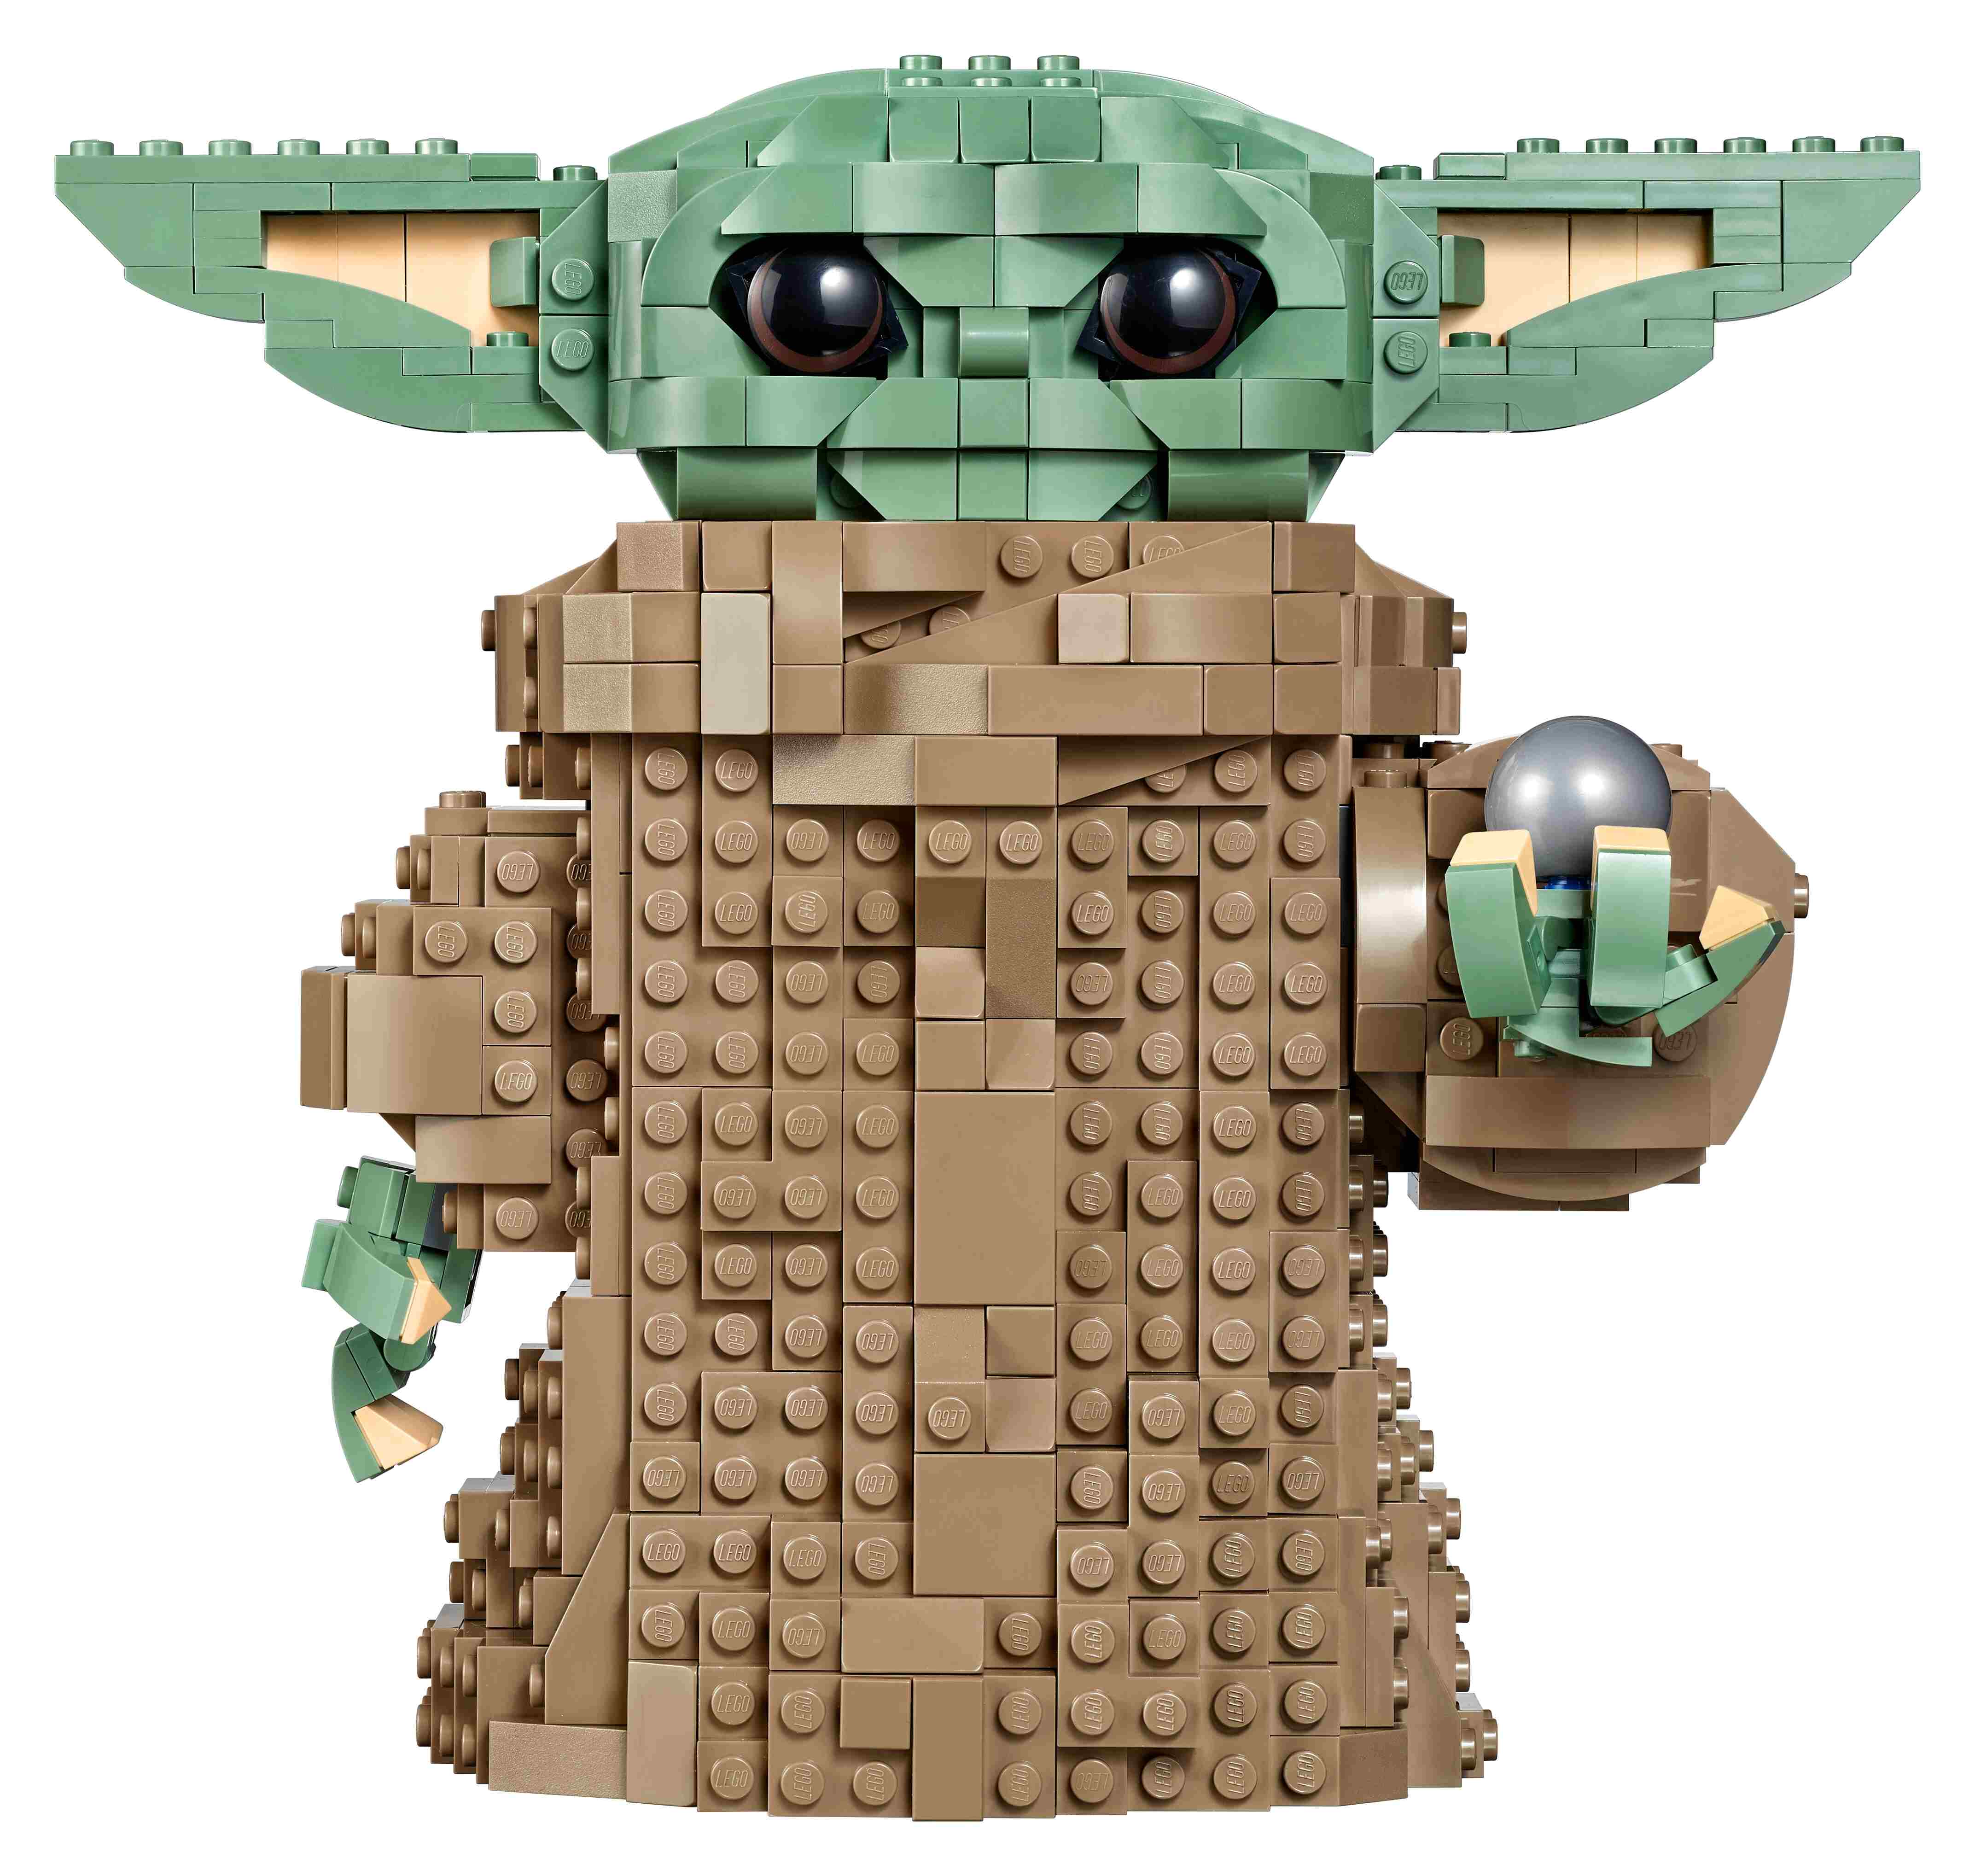 LEGO 75318 Star Wars Das Kind, The Mandalorian, Schaltknauf-Spielzeug